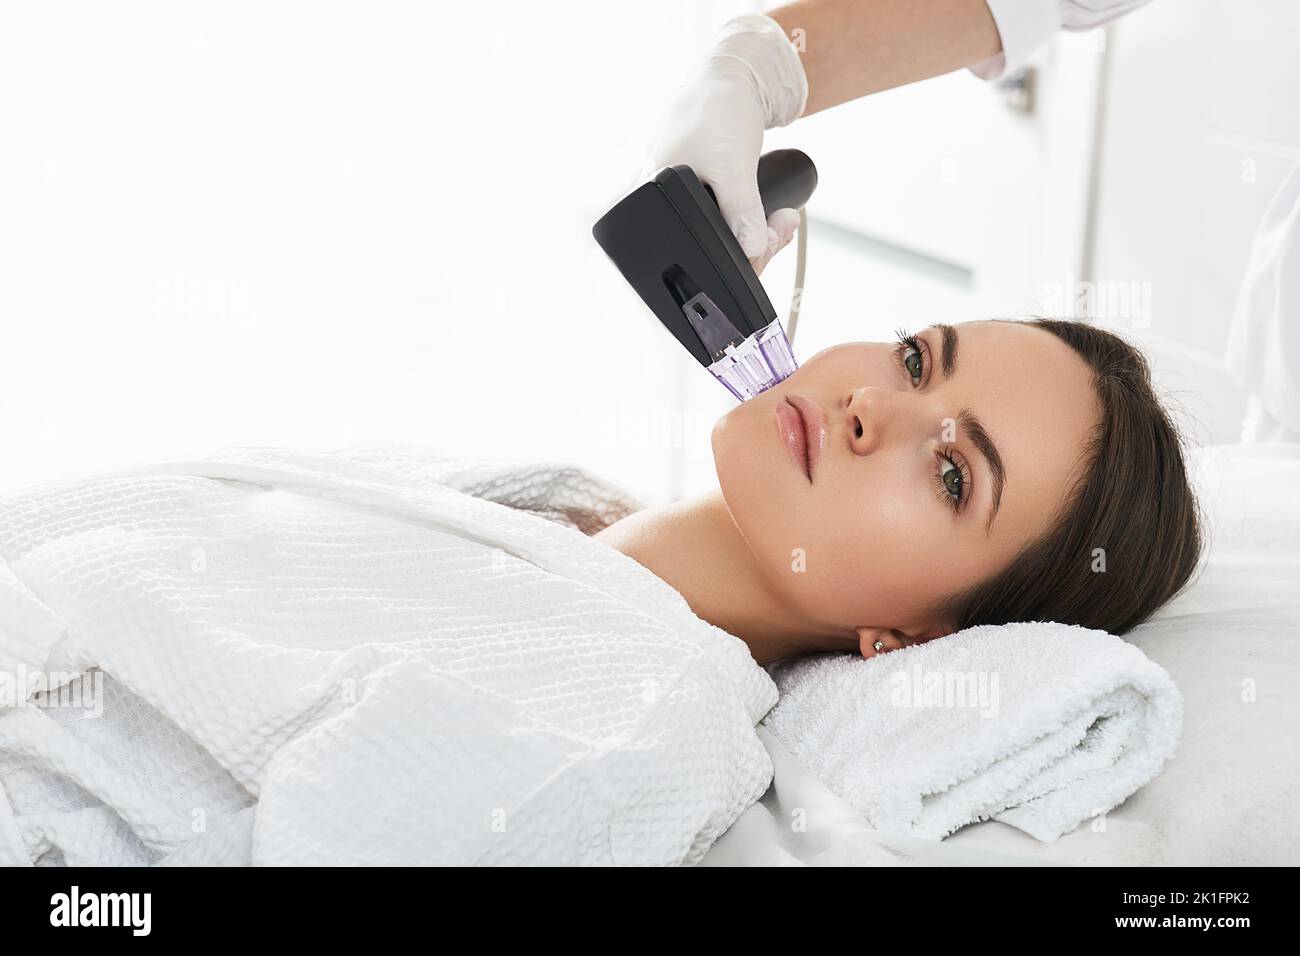 Frau während RF-Lifting-Verfahren für ihr Gesicht Haut Straffung mit Kosmetikerin in einem Schönheitssalon Stockfoto